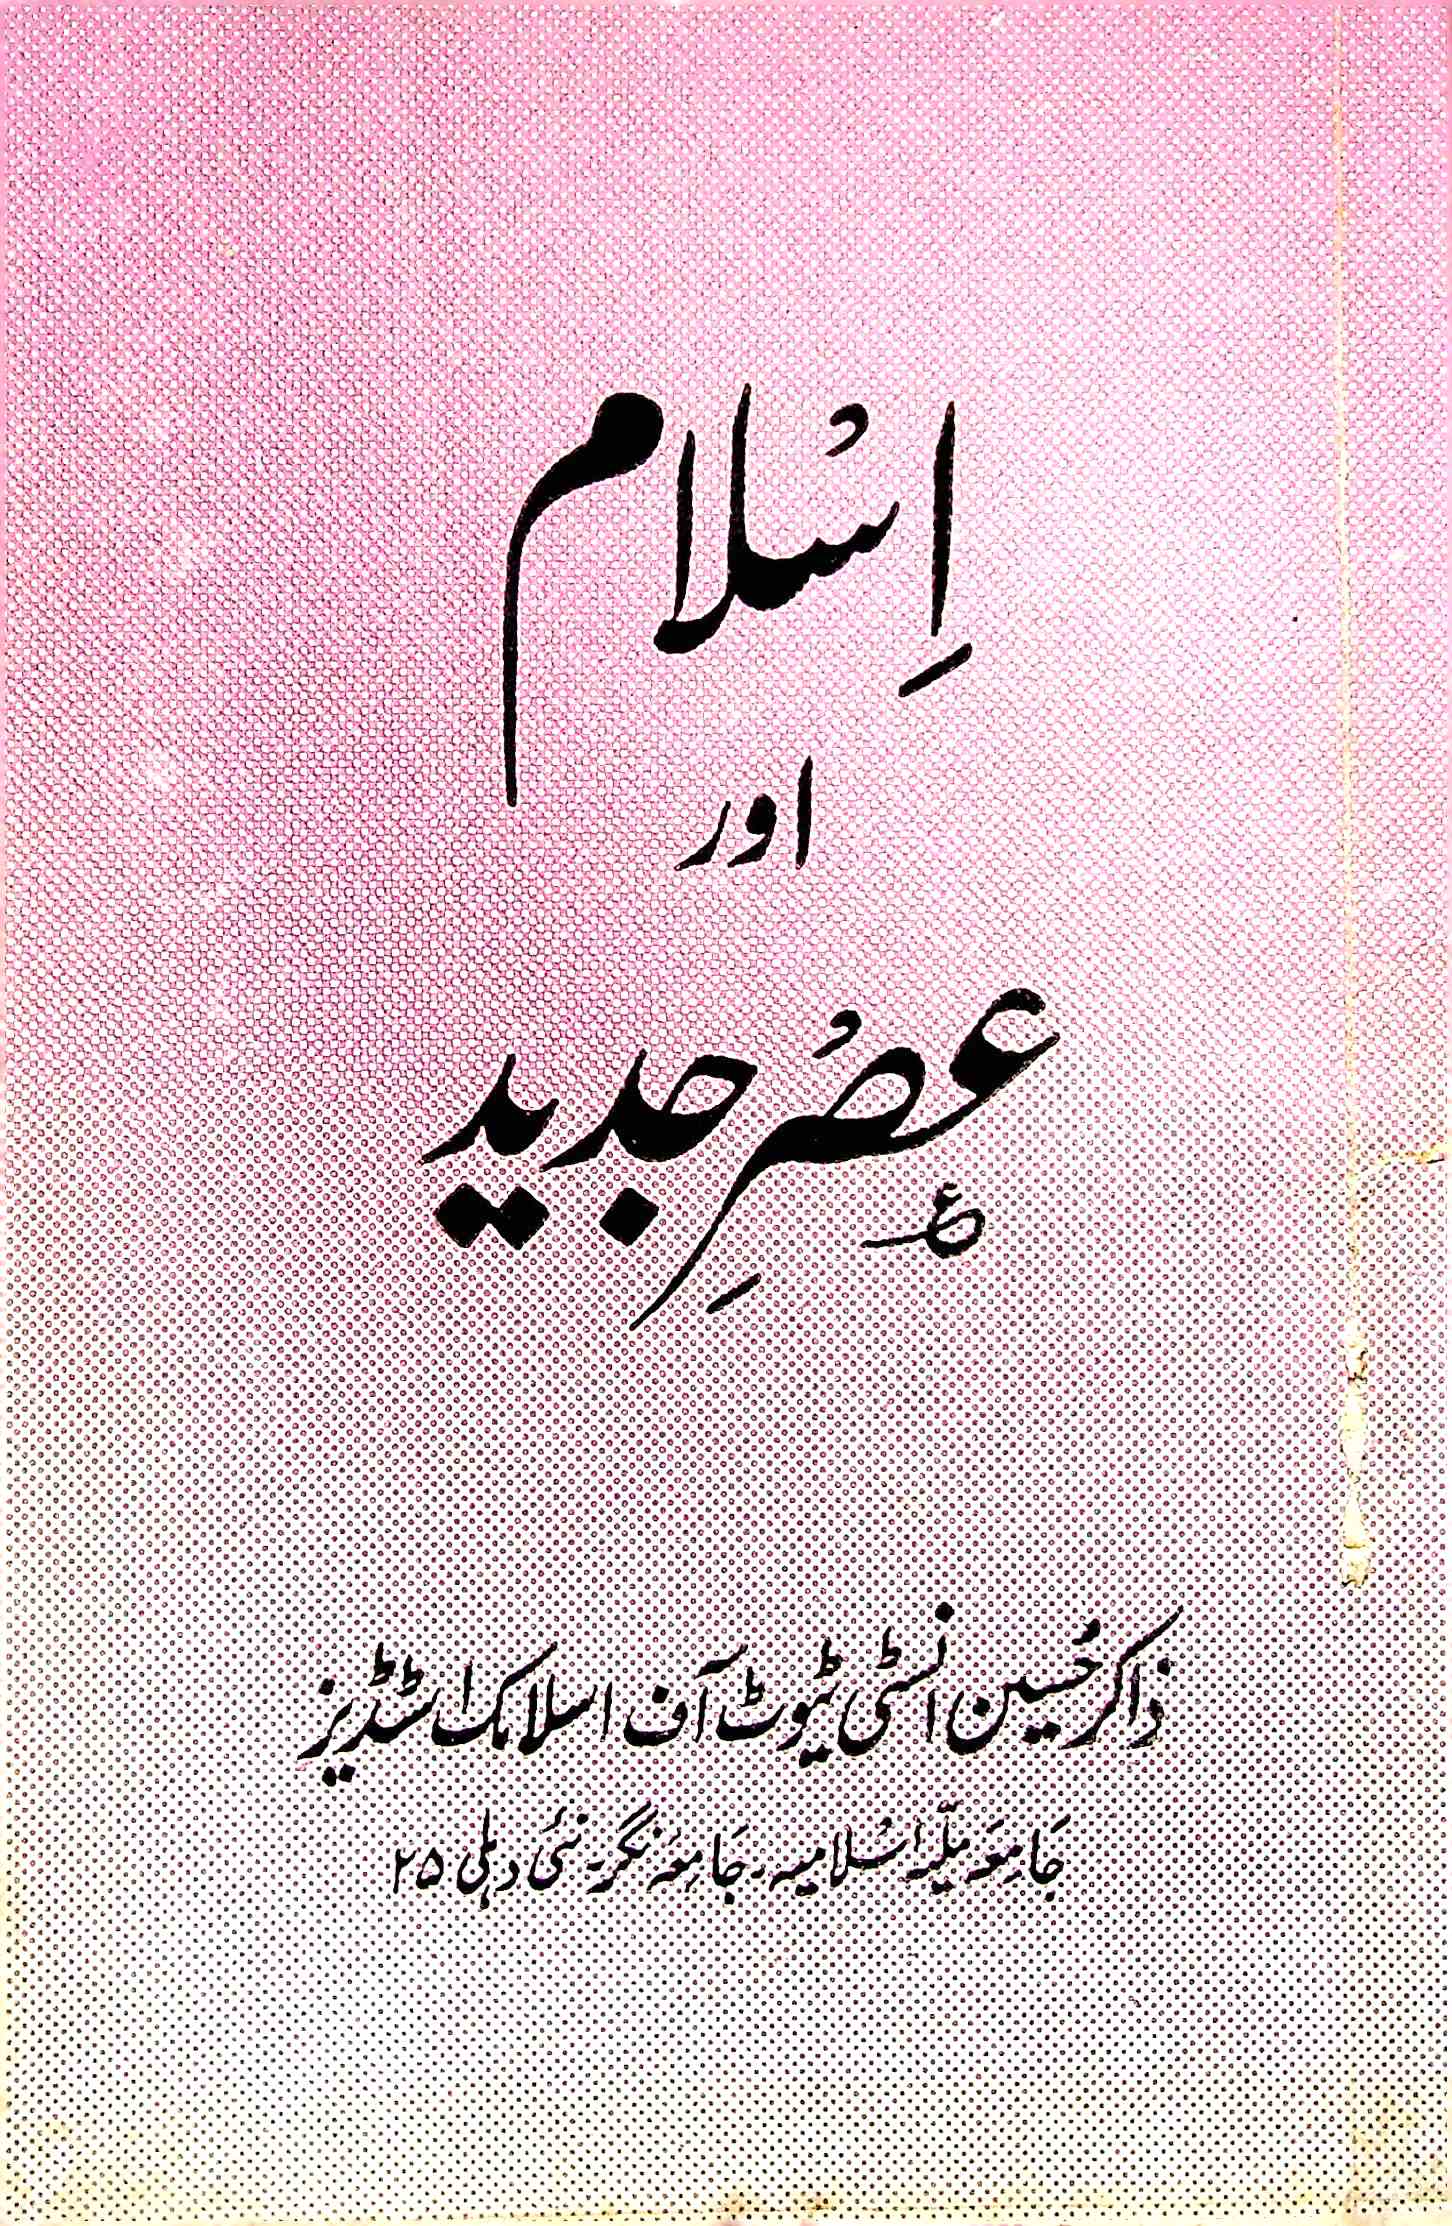 Islam Aur Asr-e-Jadeed